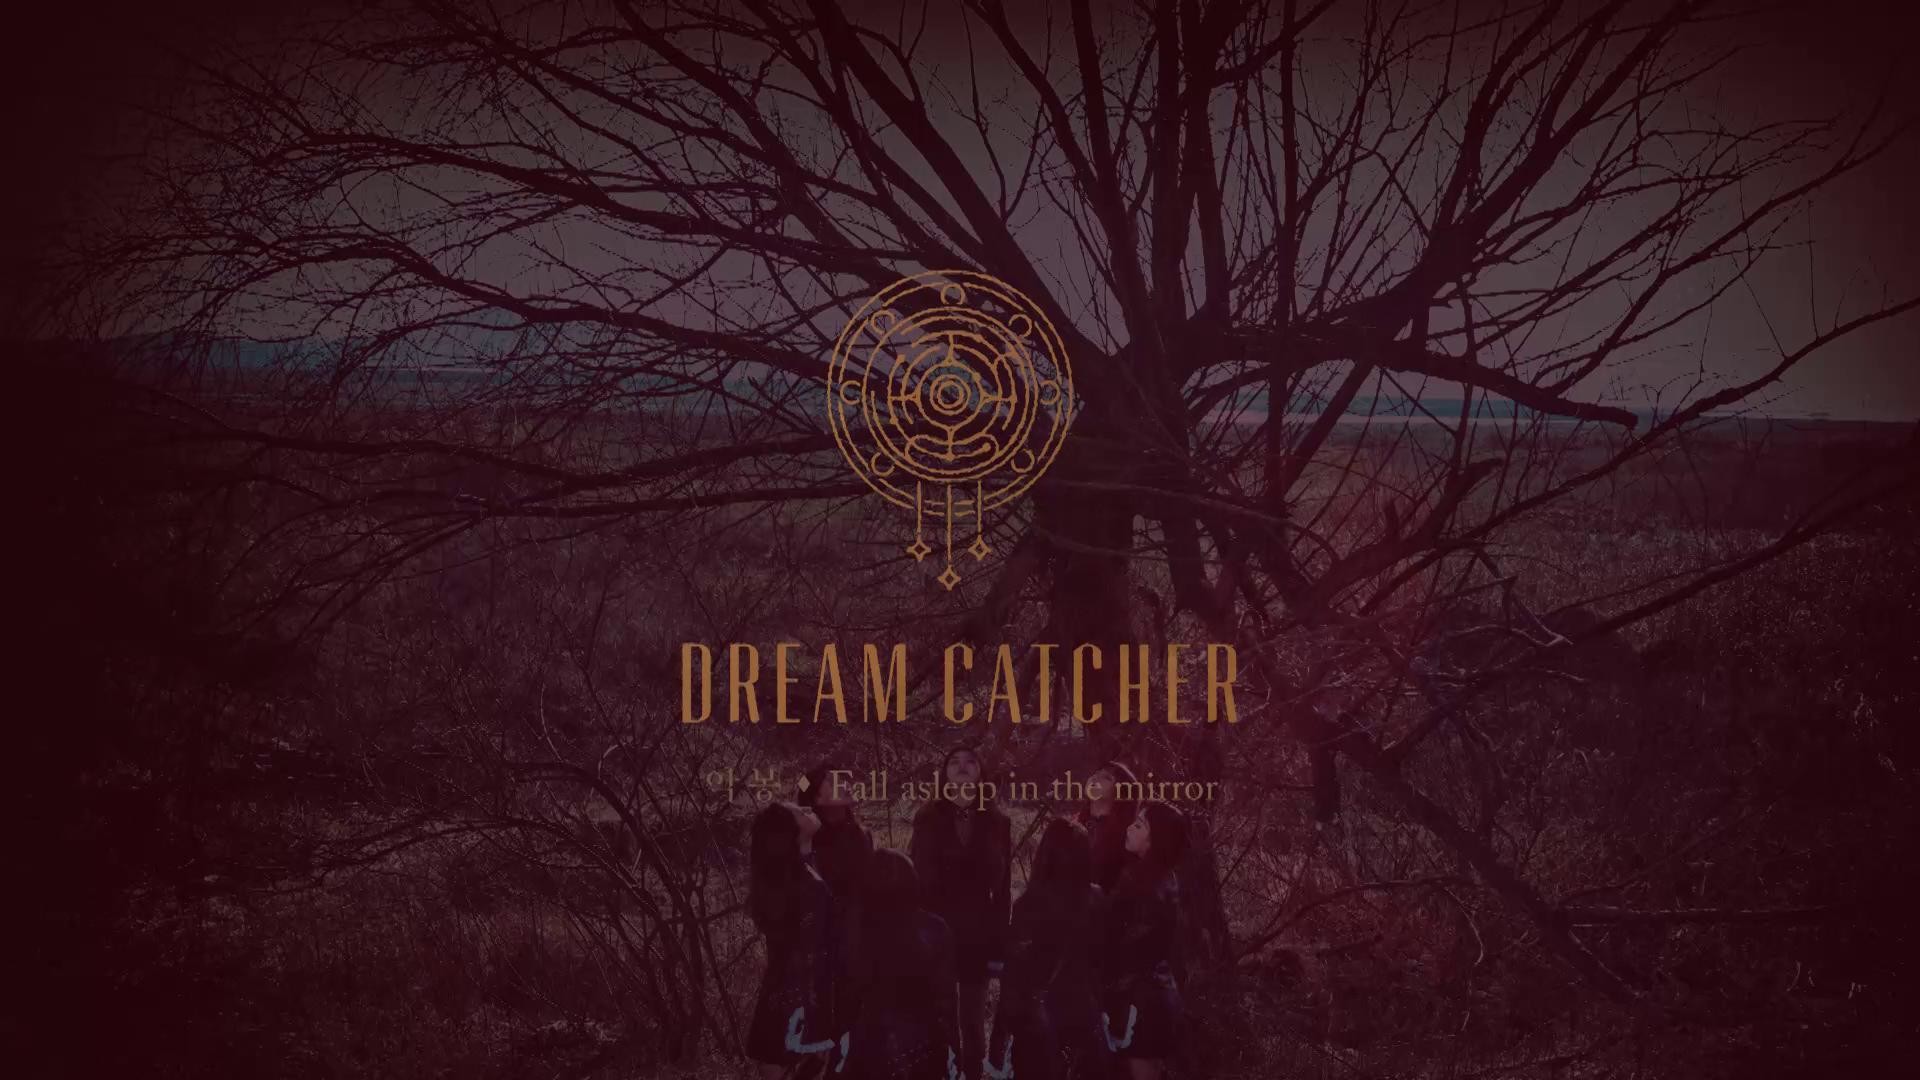 V LIVE – Dreamcatcher(ë“œë¦¼ìº ì³ ) 